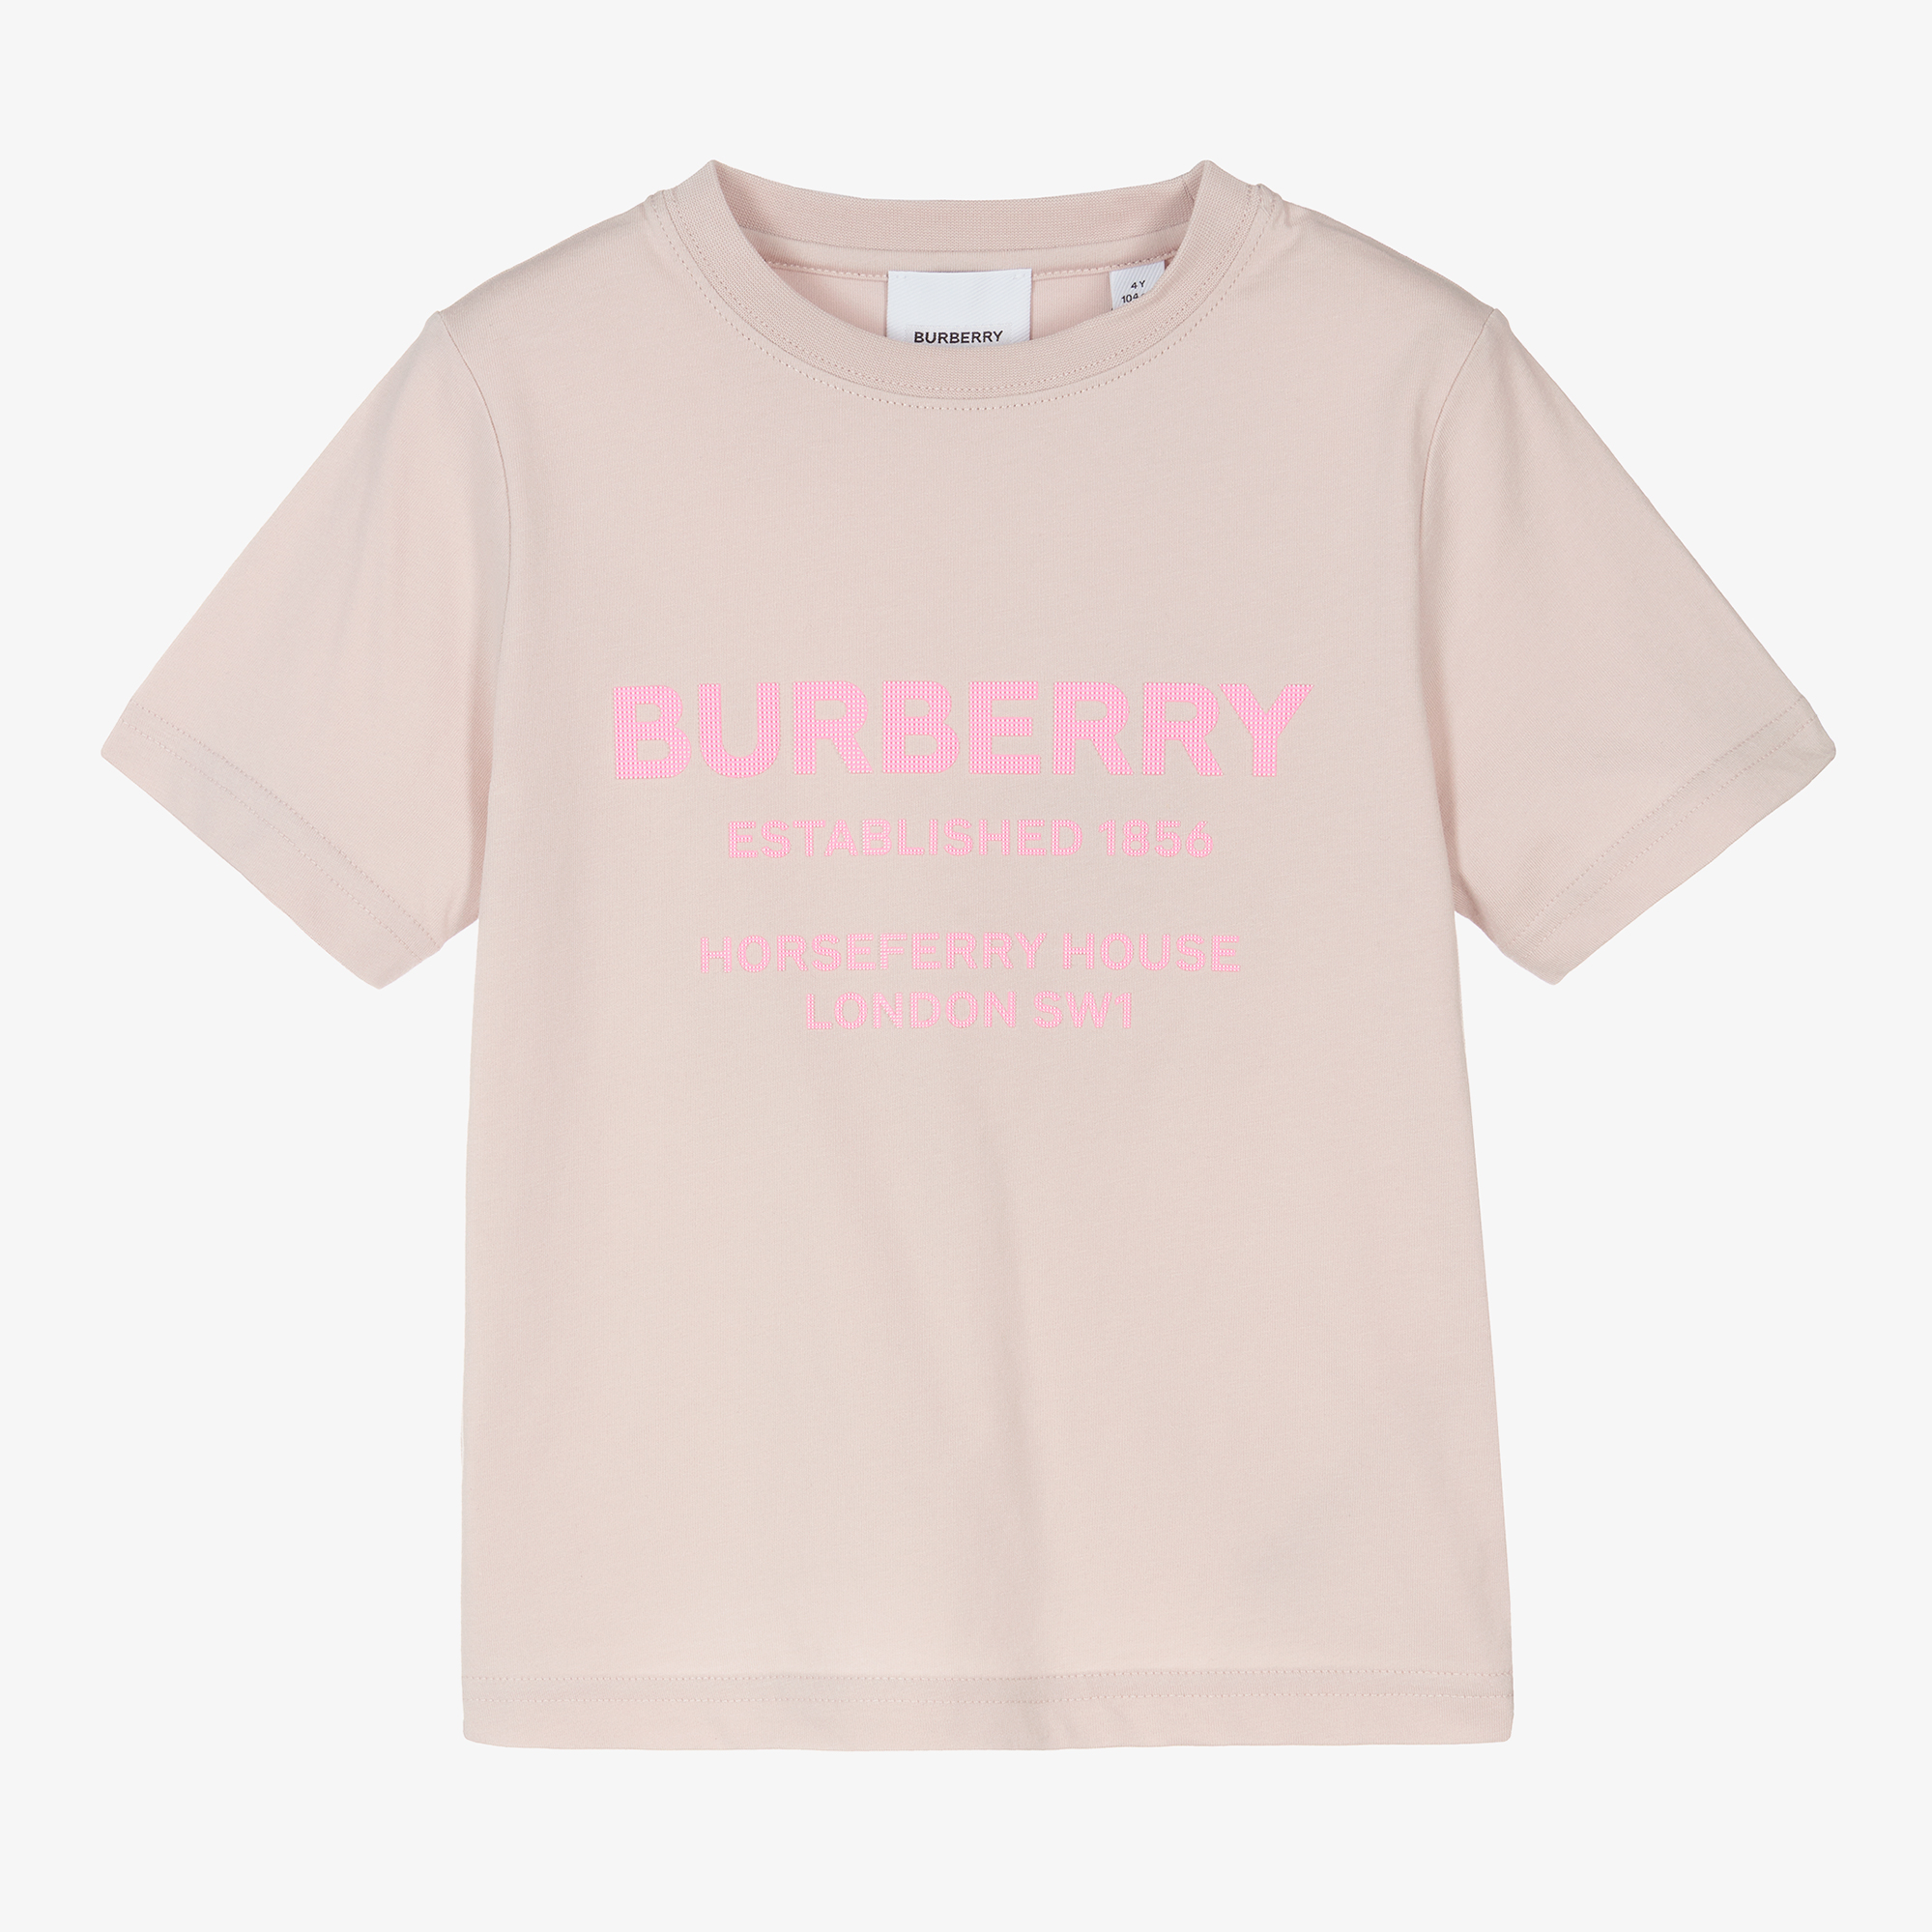 Burberry Girls Pink Cotton Logo T-Shirt